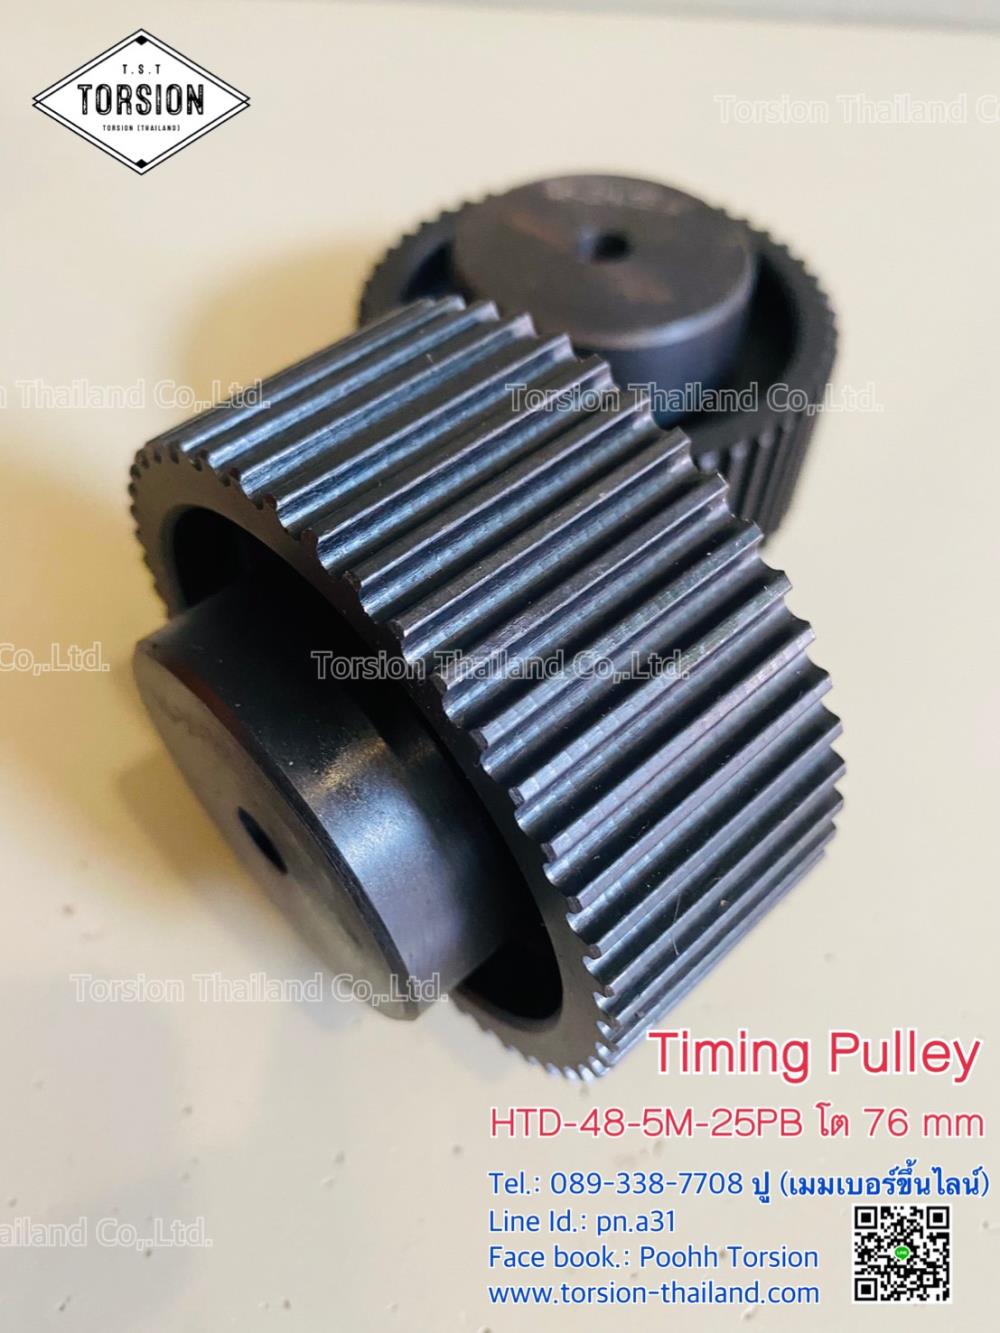 Timing Pulley HTD-48-5M-25PB โต 76 mm,timing pulley , timing , HTD-48-5M-25PB โต 76 mm , HTD-48-5M-25PB , ทามมิ่งมู่เล่ย์ , ทามมิ่ง , มู่เล่ย์,TORSION,Materials Handling/Pulleys